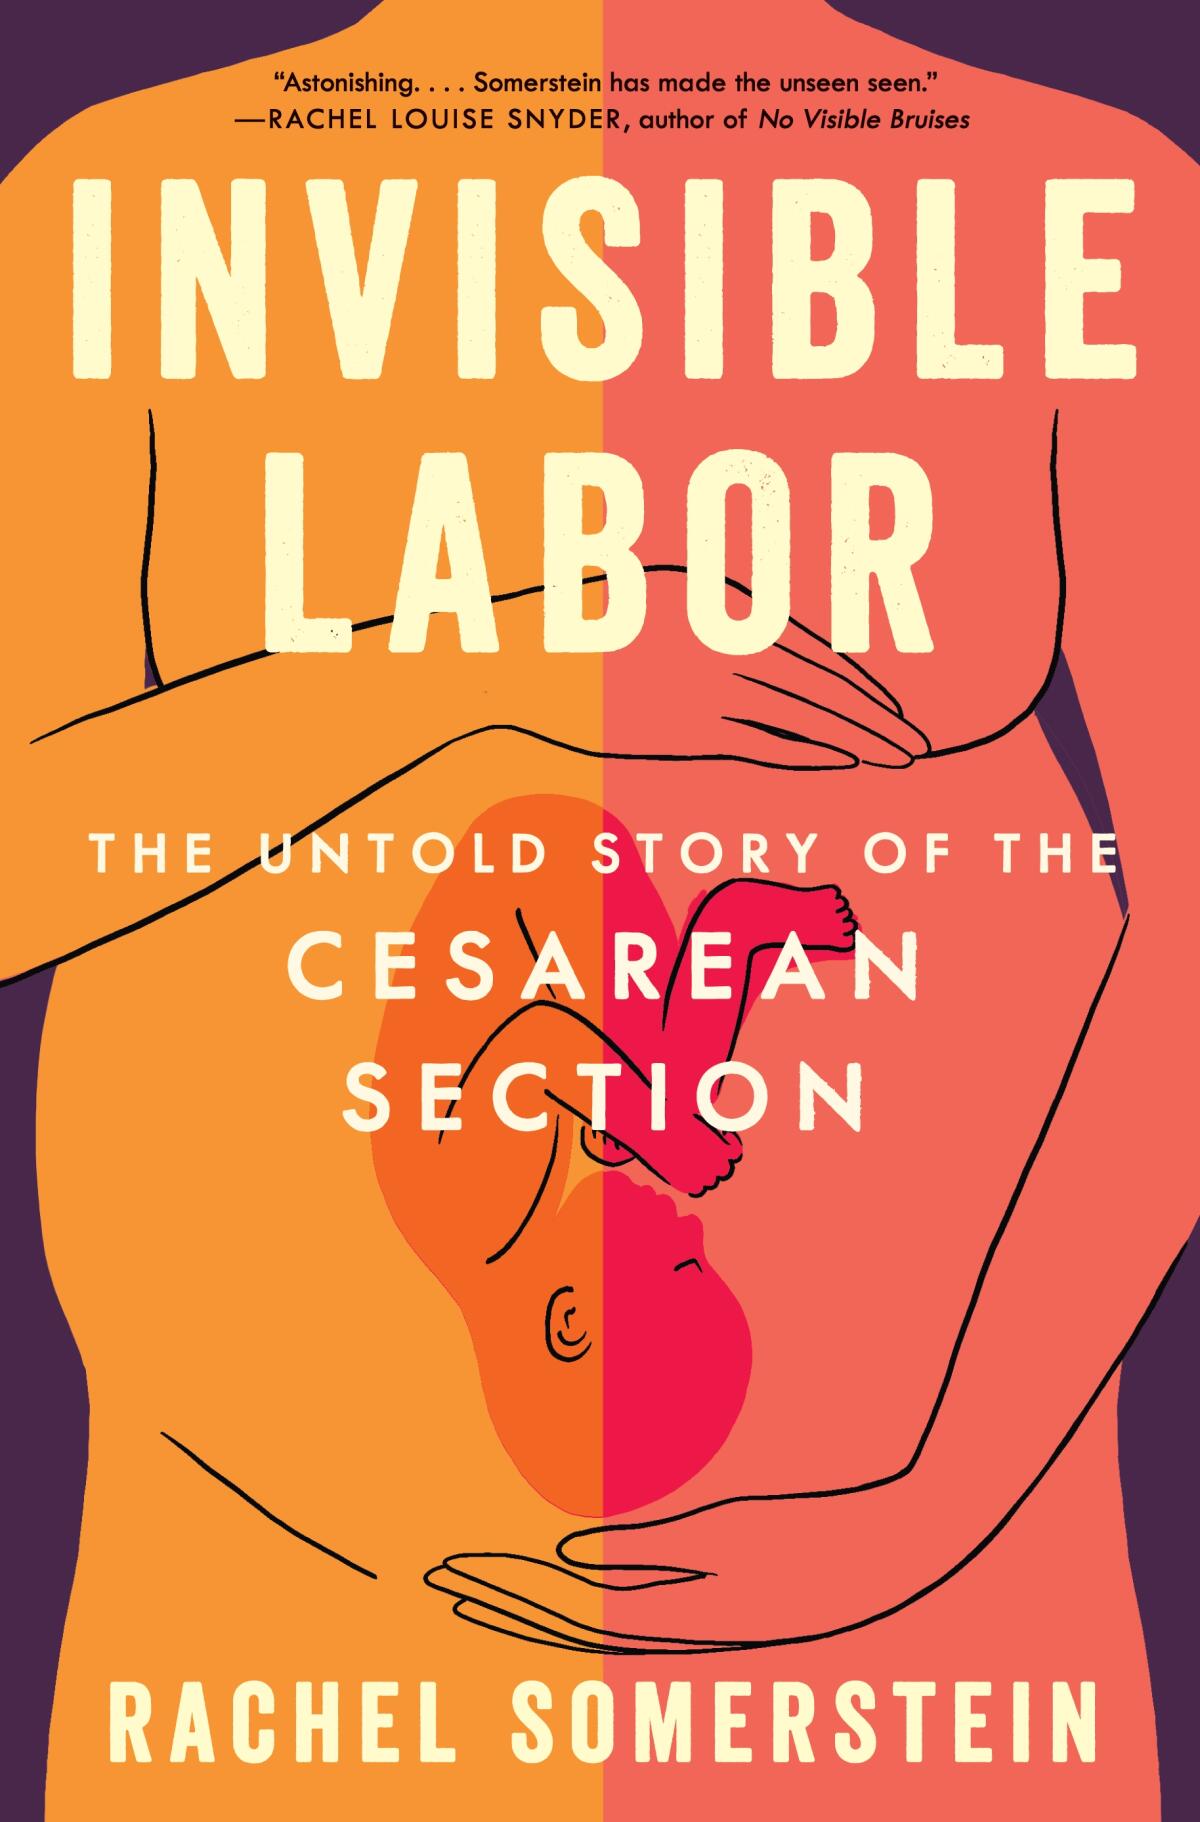 "Invisible Labor" cover